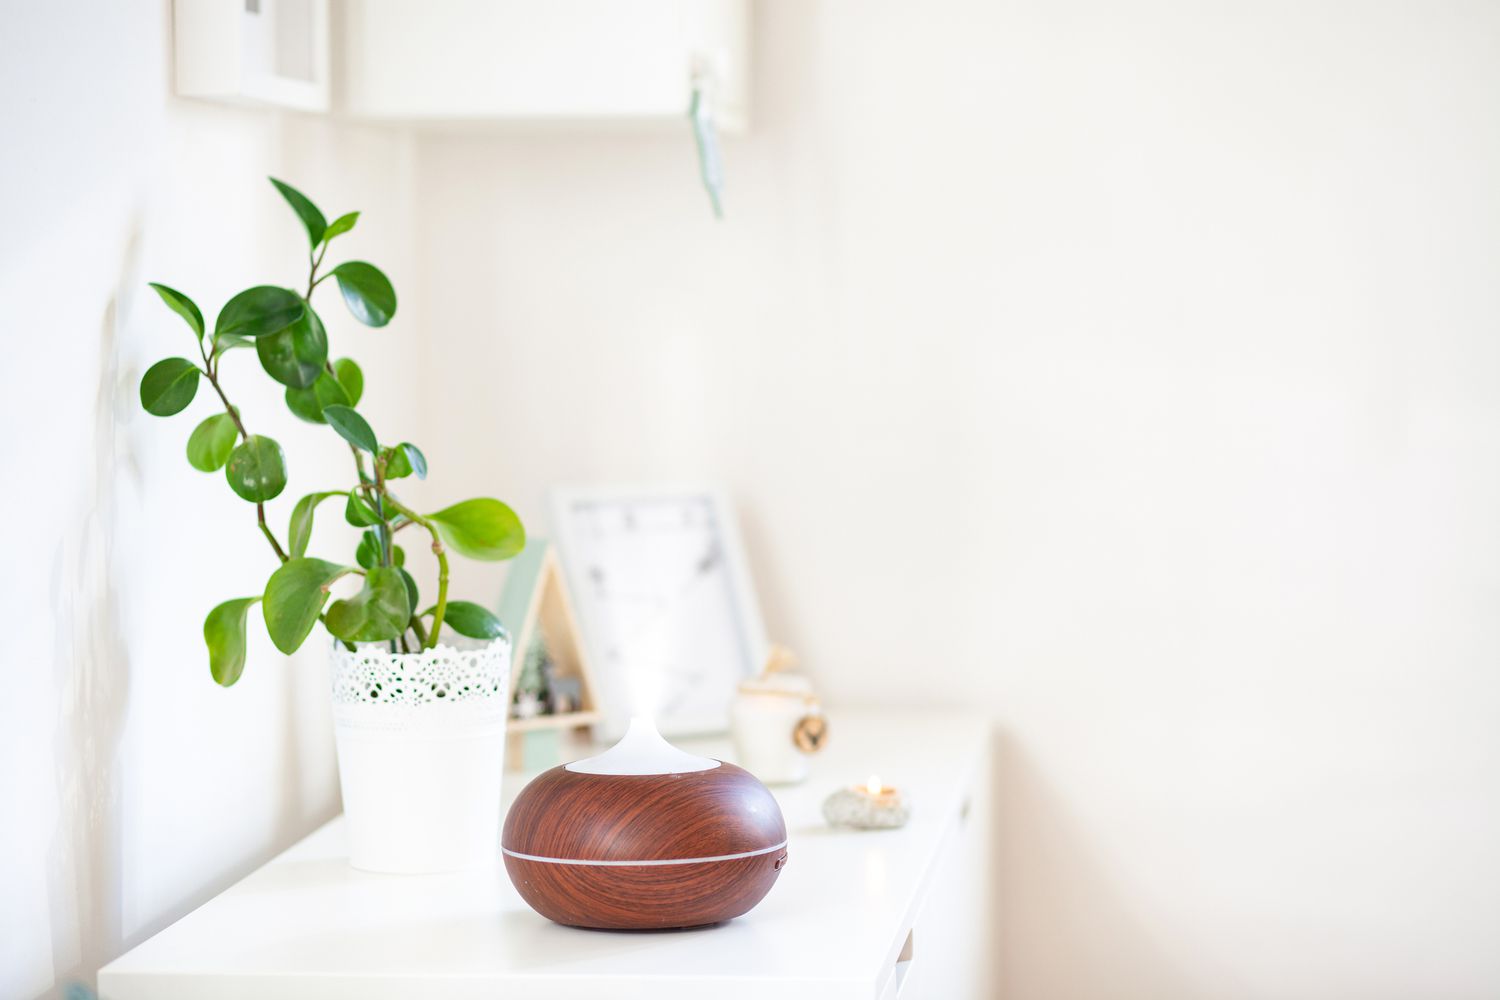 difusor de aromaterapia con una planta sobre una mesa en una habitación blanca